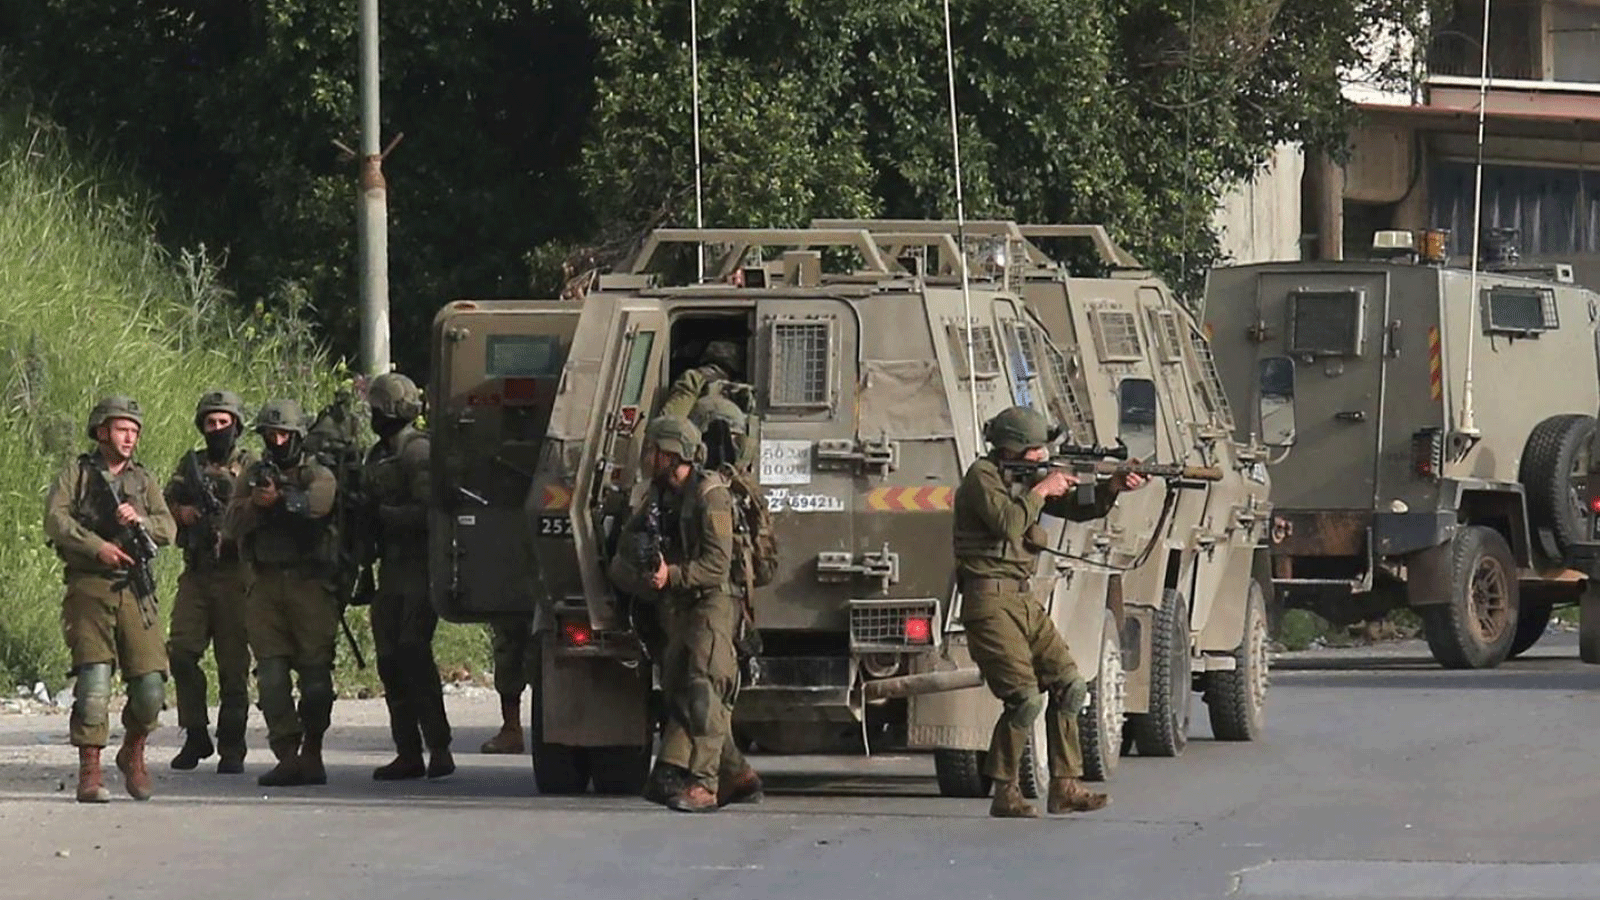 ضباط أمن إسرائيليون ينتشرون خلال مداهمة للبحث عن مطلوبين فلسطينيين في مدينة نابلس بالضفة الغربية. 11 نيسان\ أبريل 2022